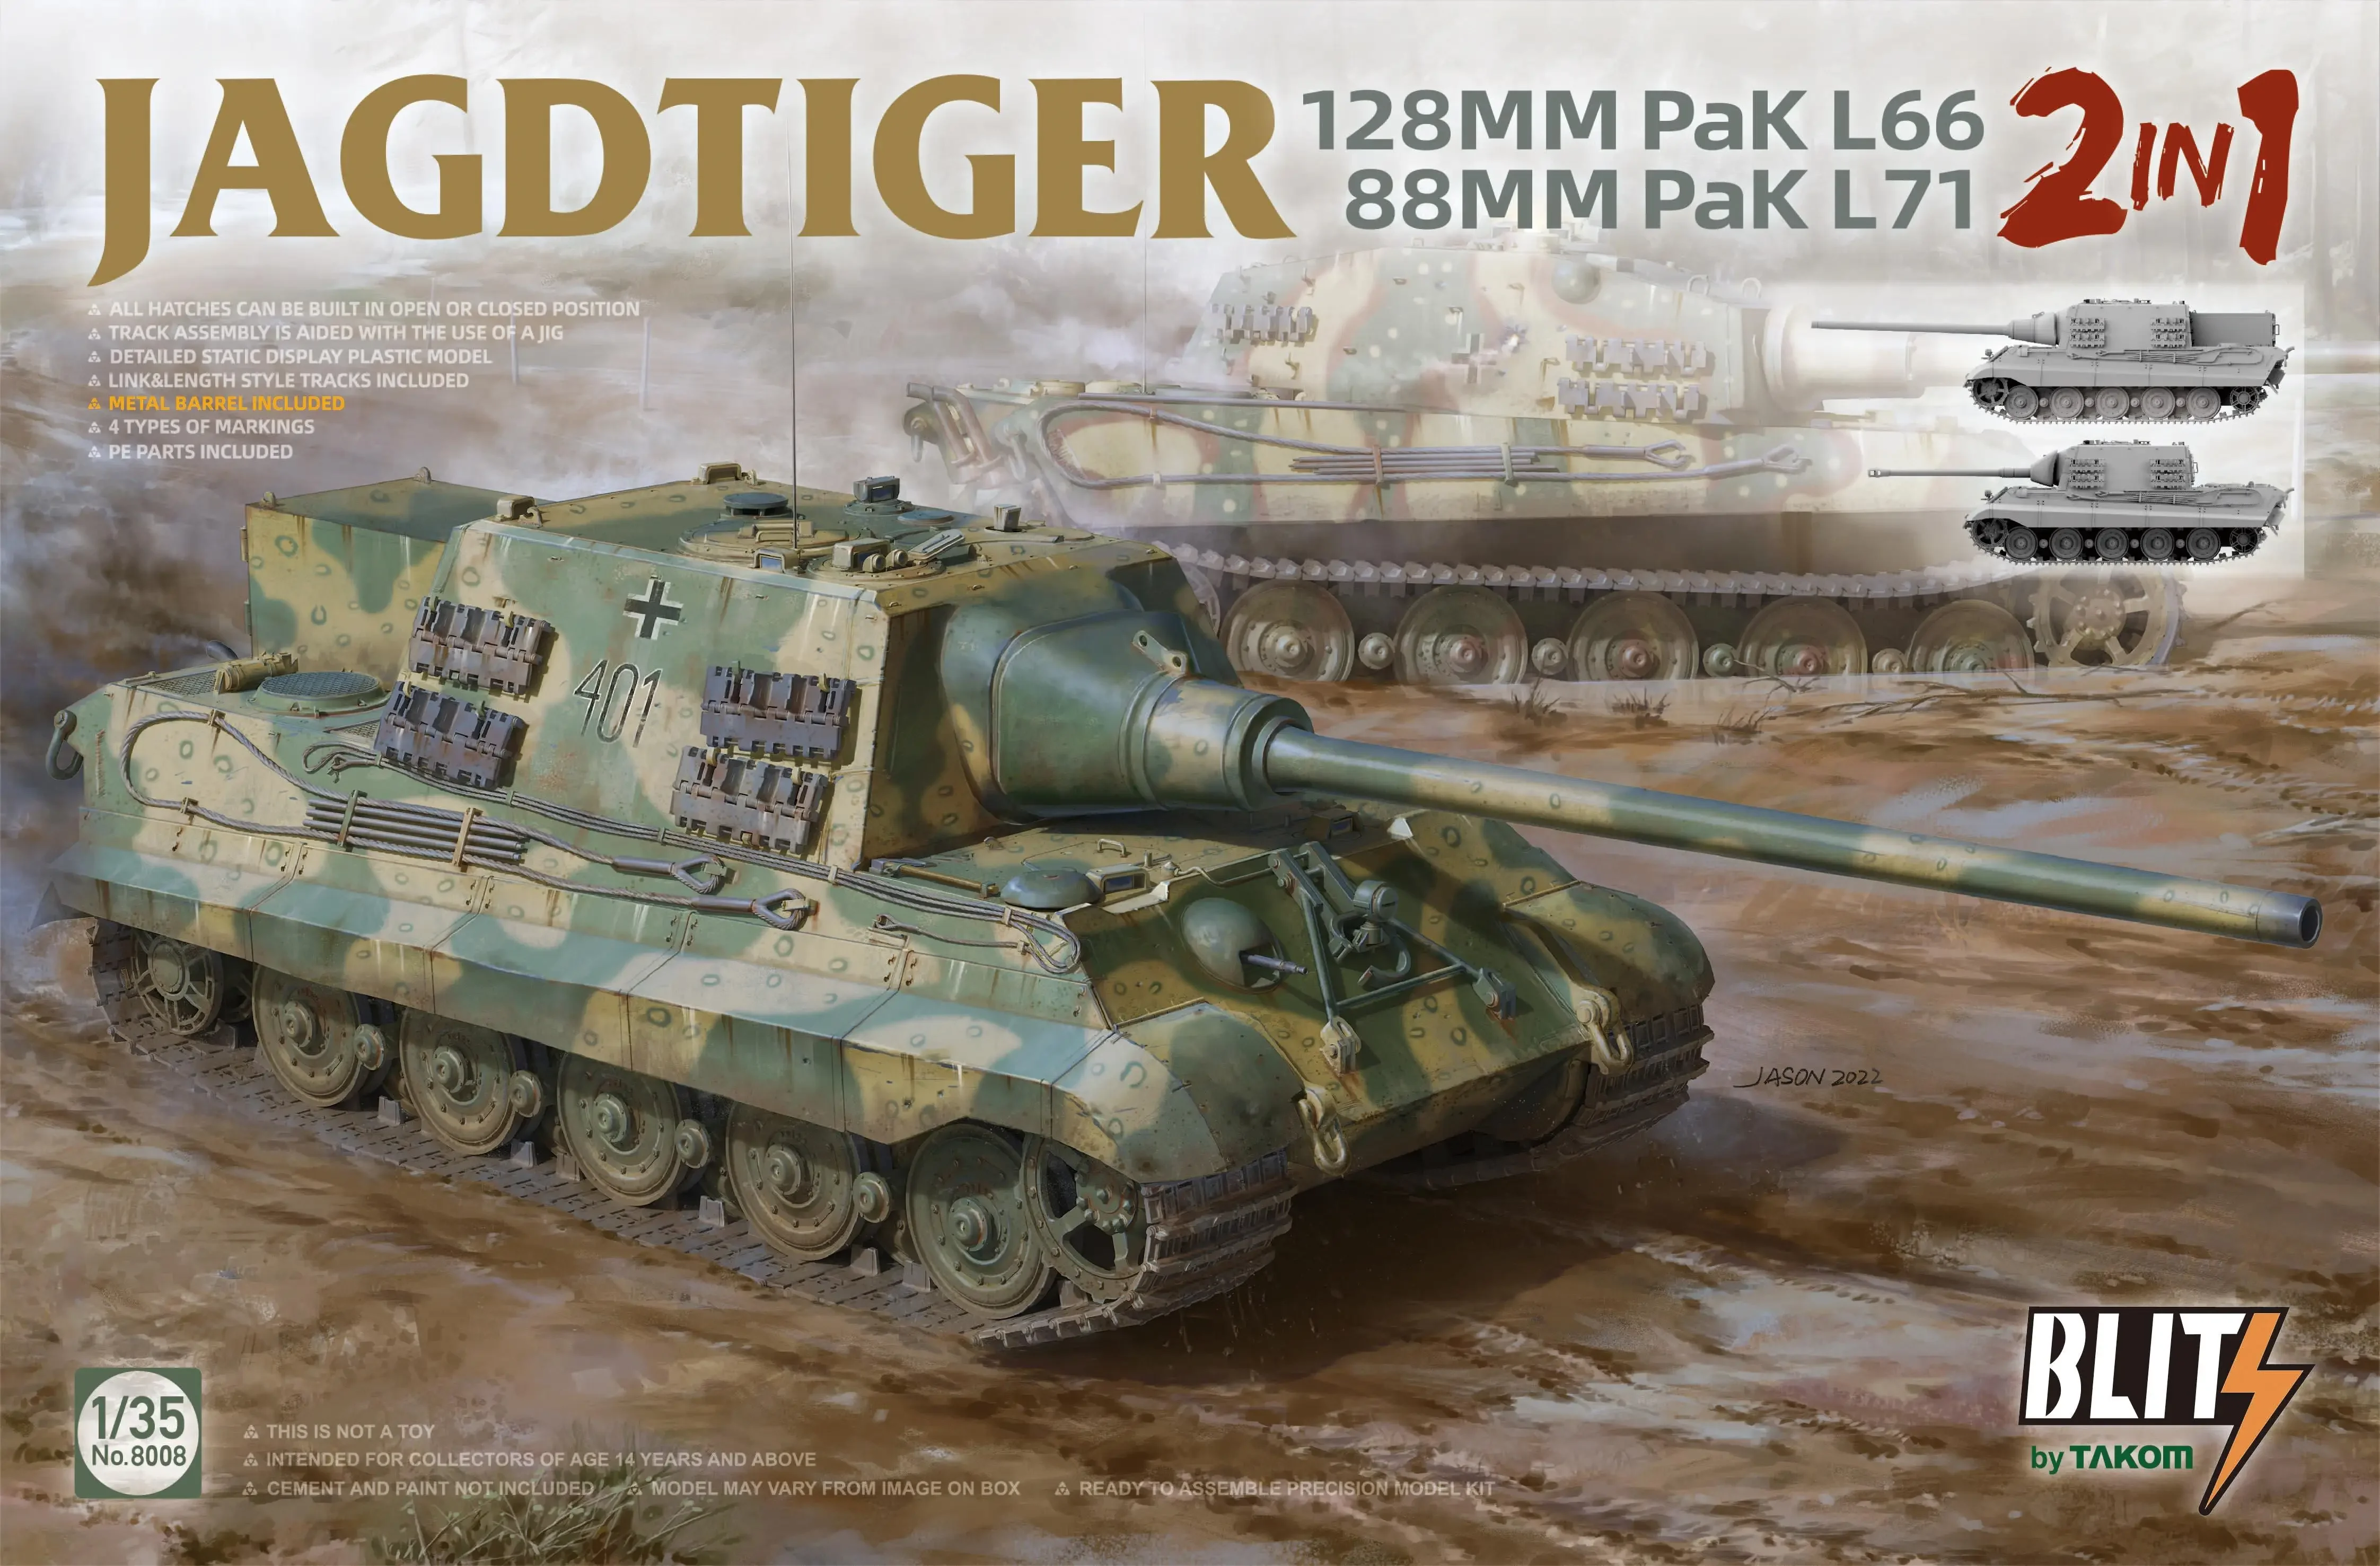 

Takom 8008 1/35 Scale JAGDTIGER 128mm Pak L66 & 88mm Pak L71 (2 in 1)